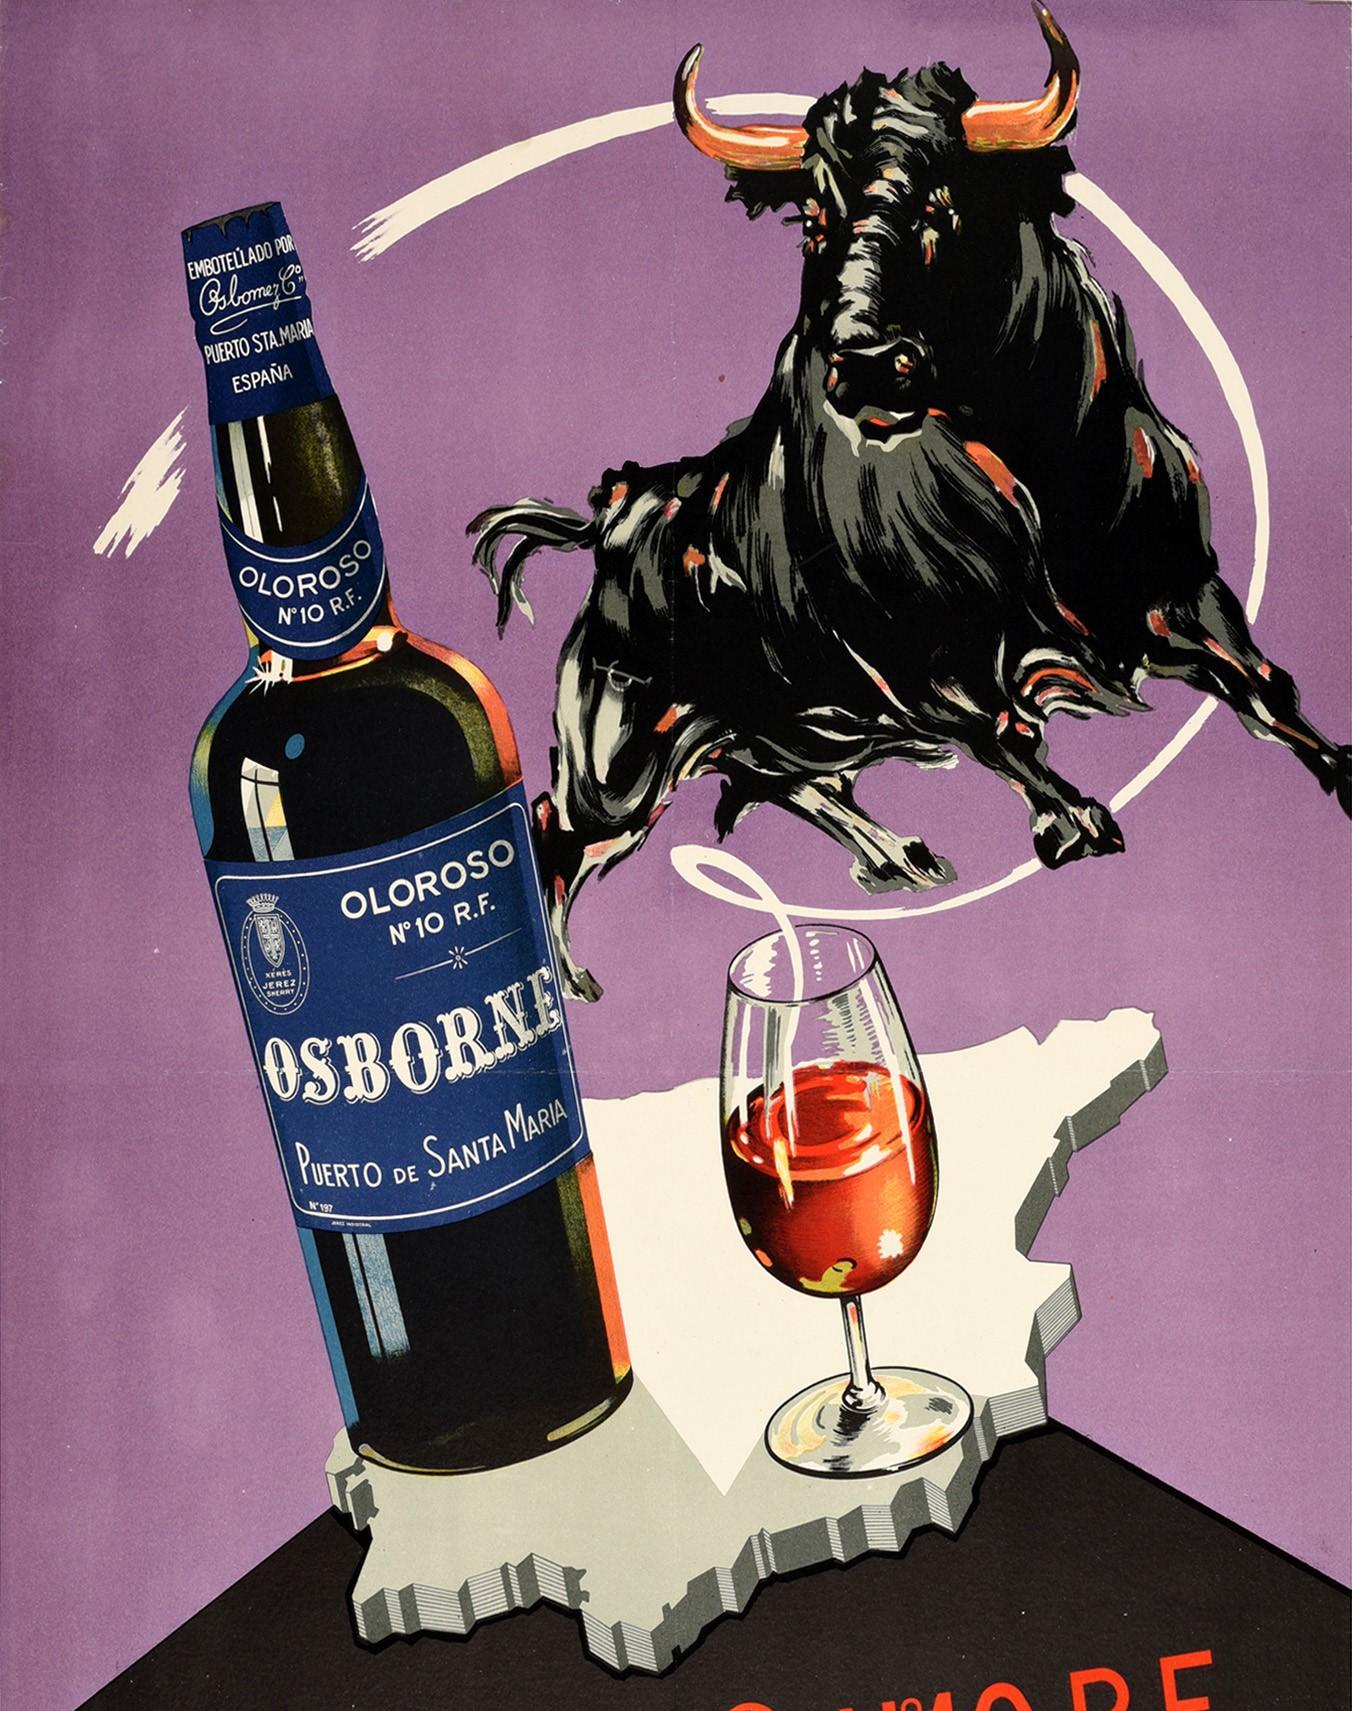 osborne sherry